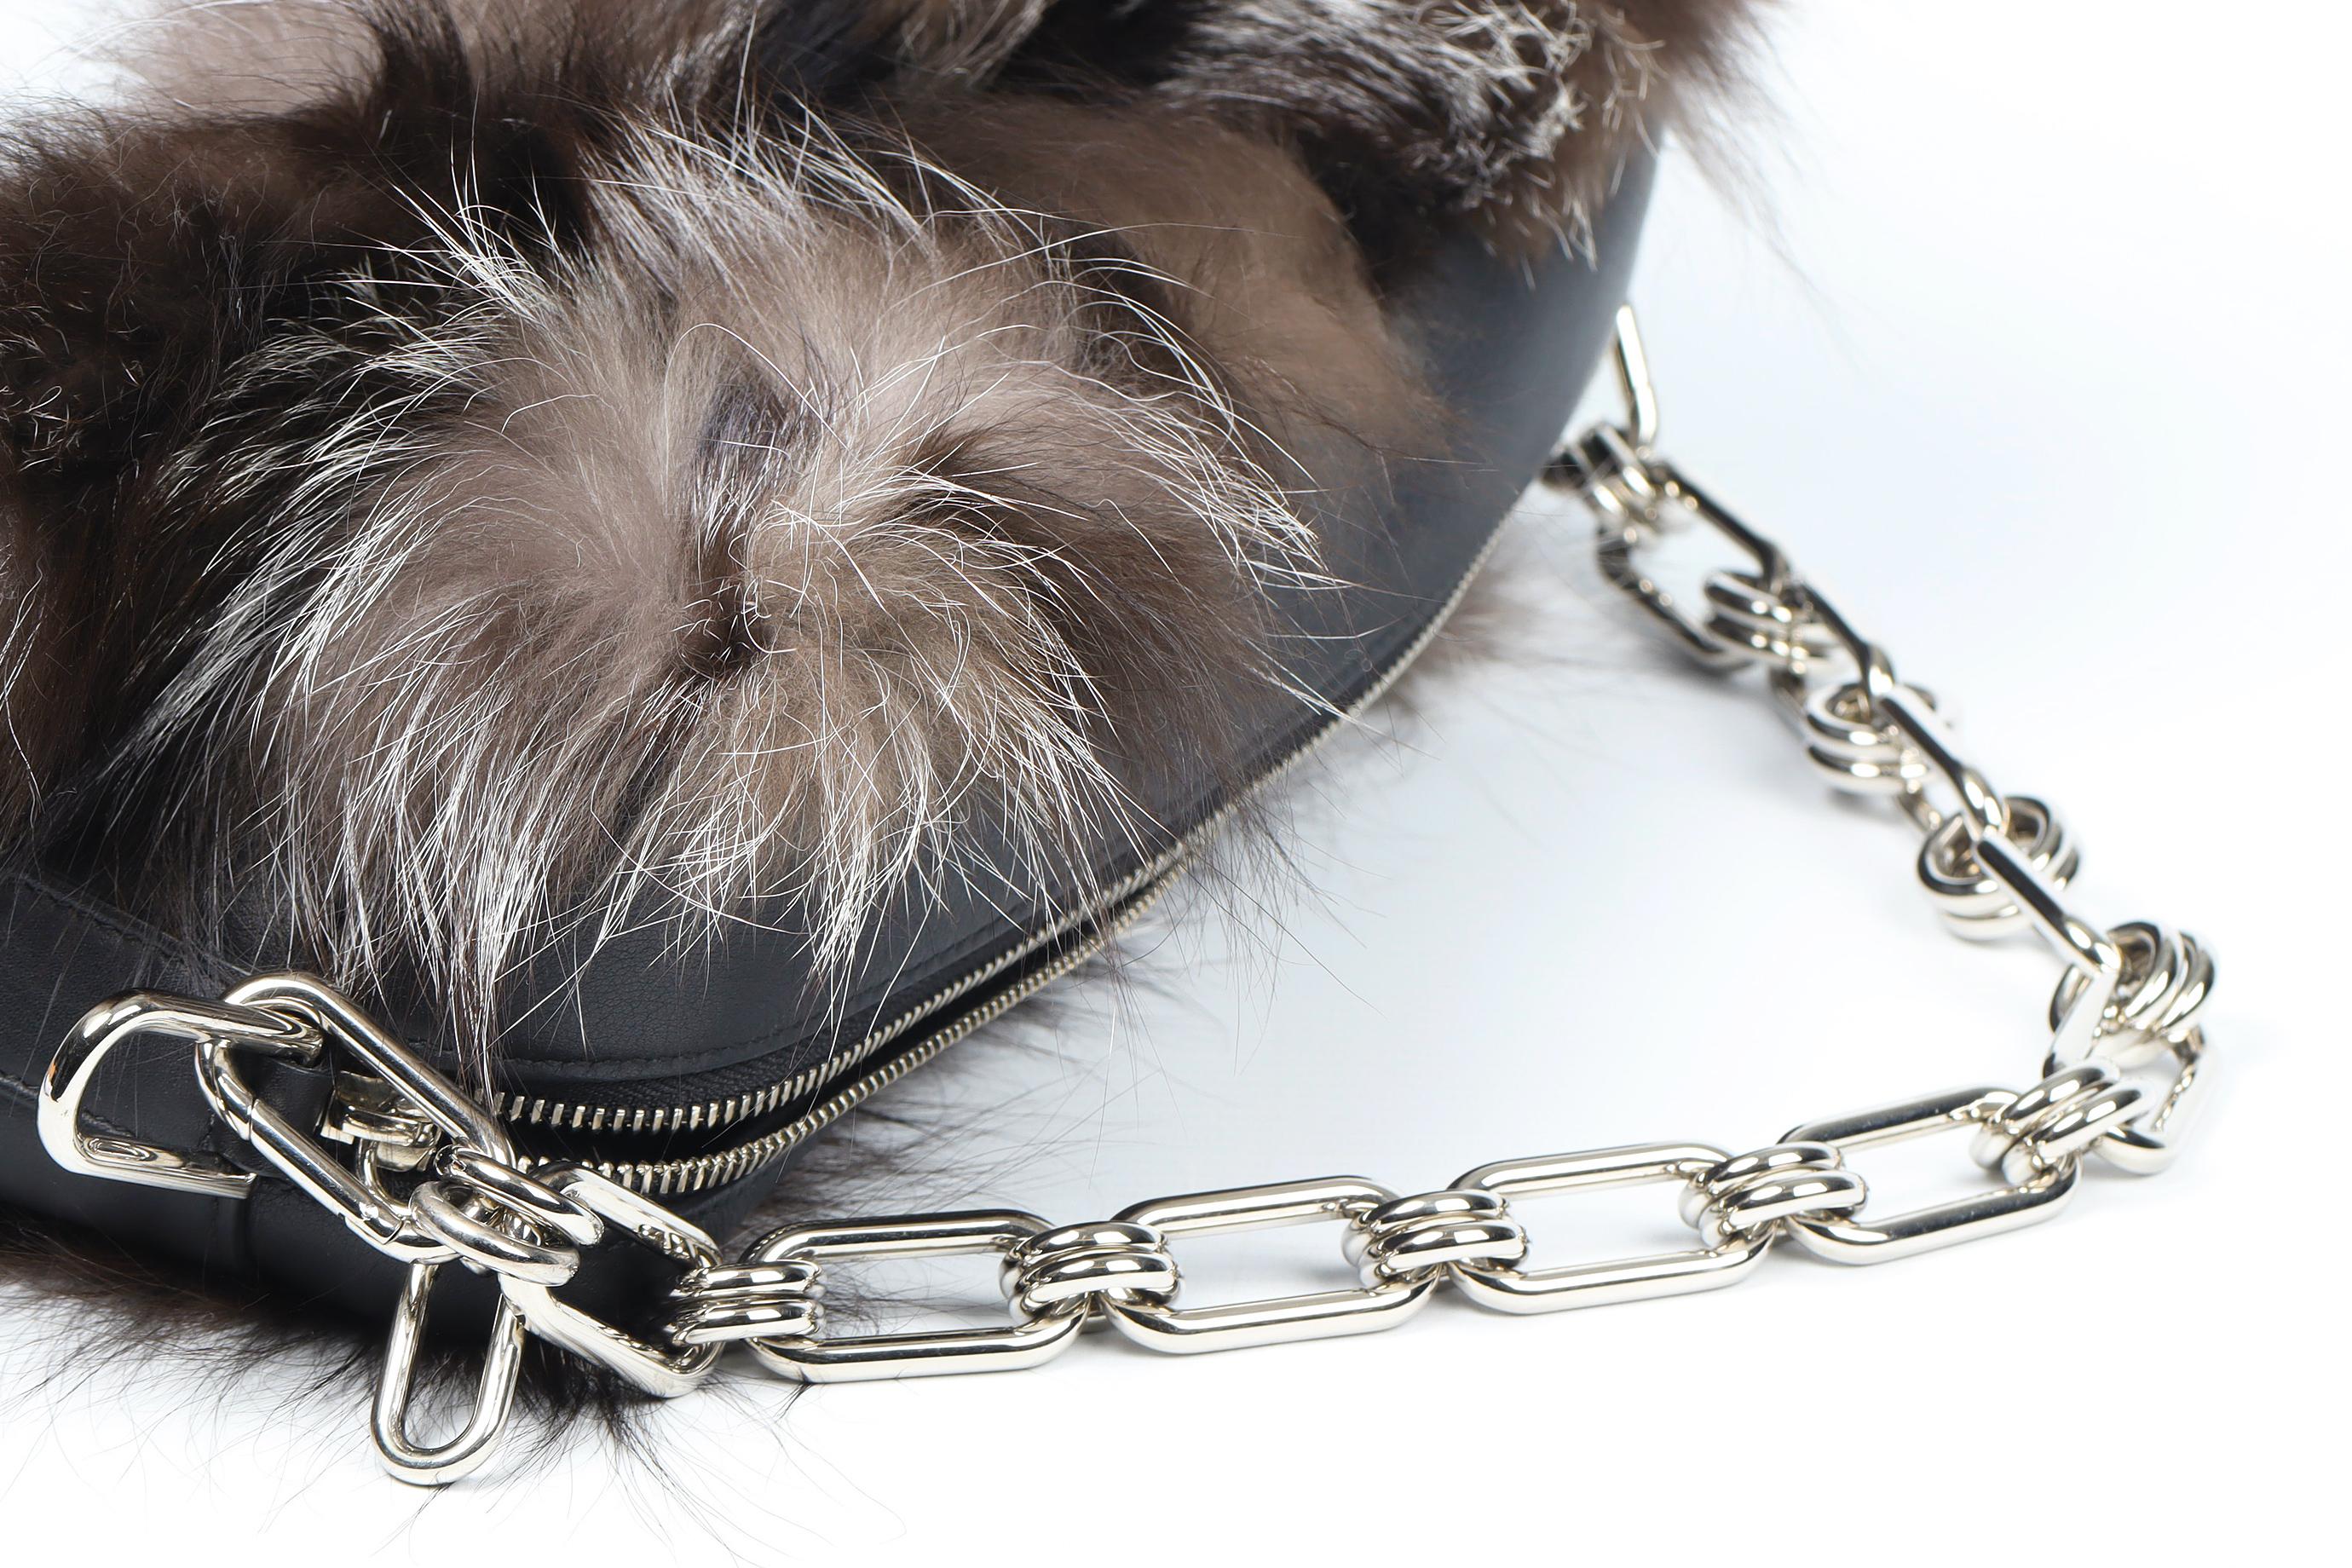 Michael Kors Collection Julie Lg Camera Fox Fur And Leather Shoulder Bag For Sale 3